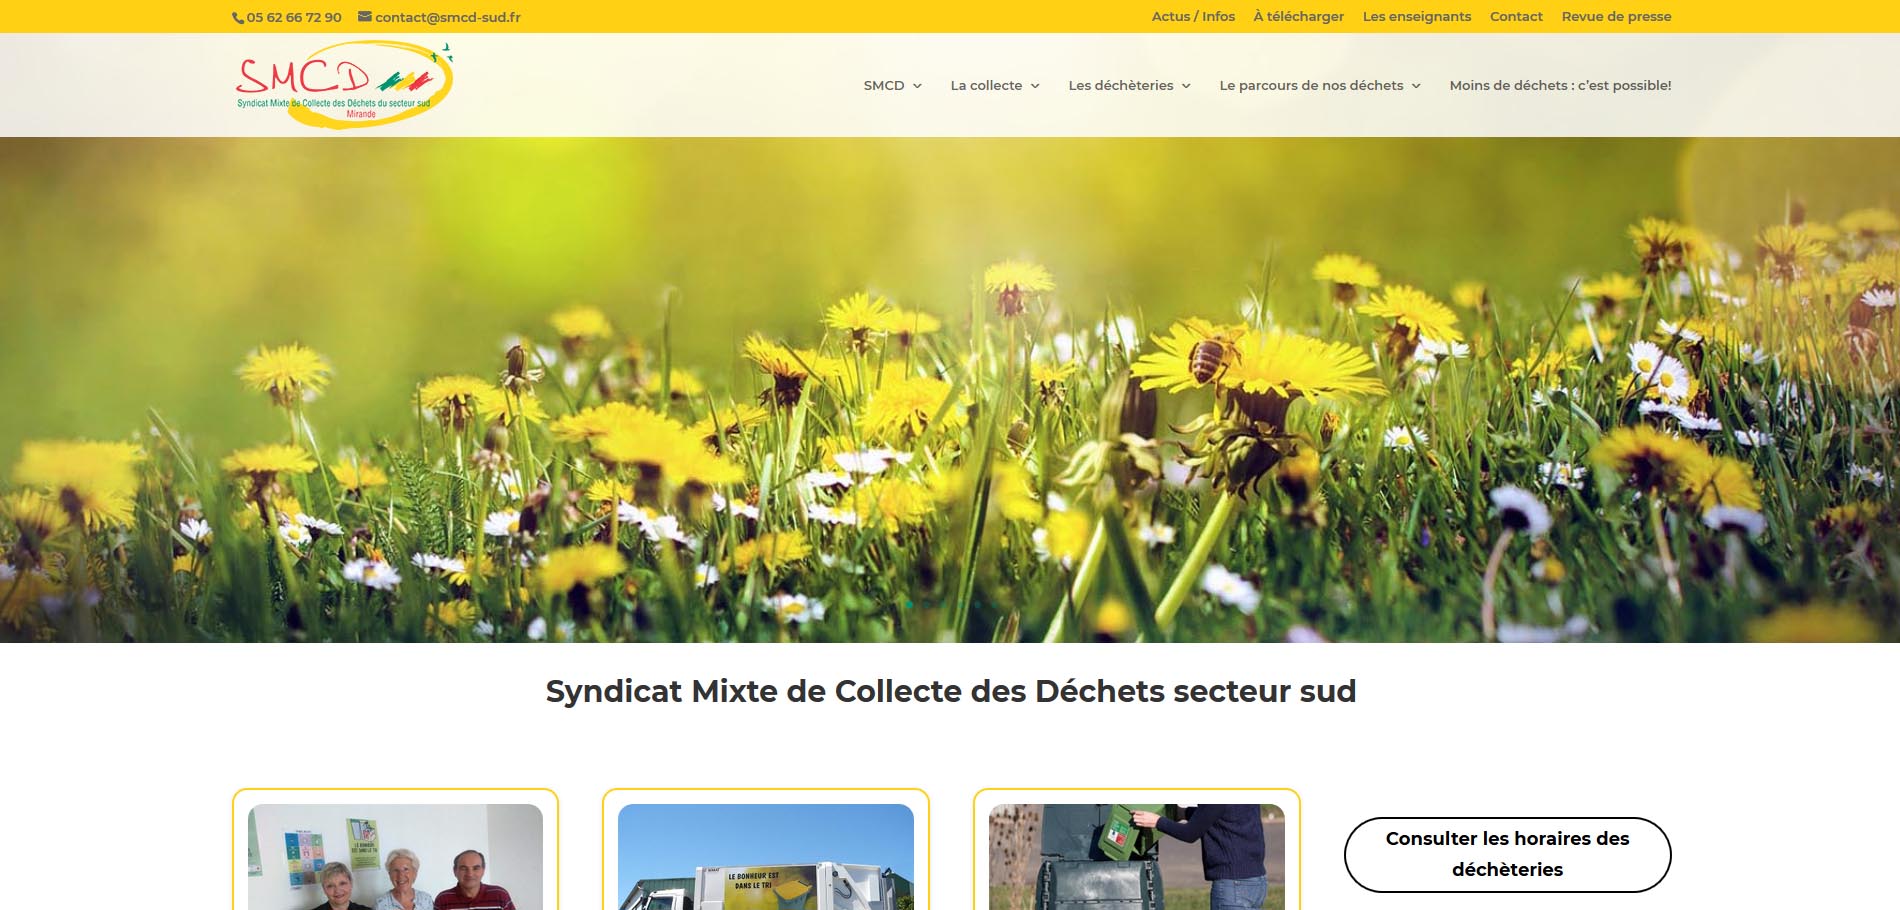 SMCD - Syndicat Mixte de Collecte des déchets secteur sud du Gers